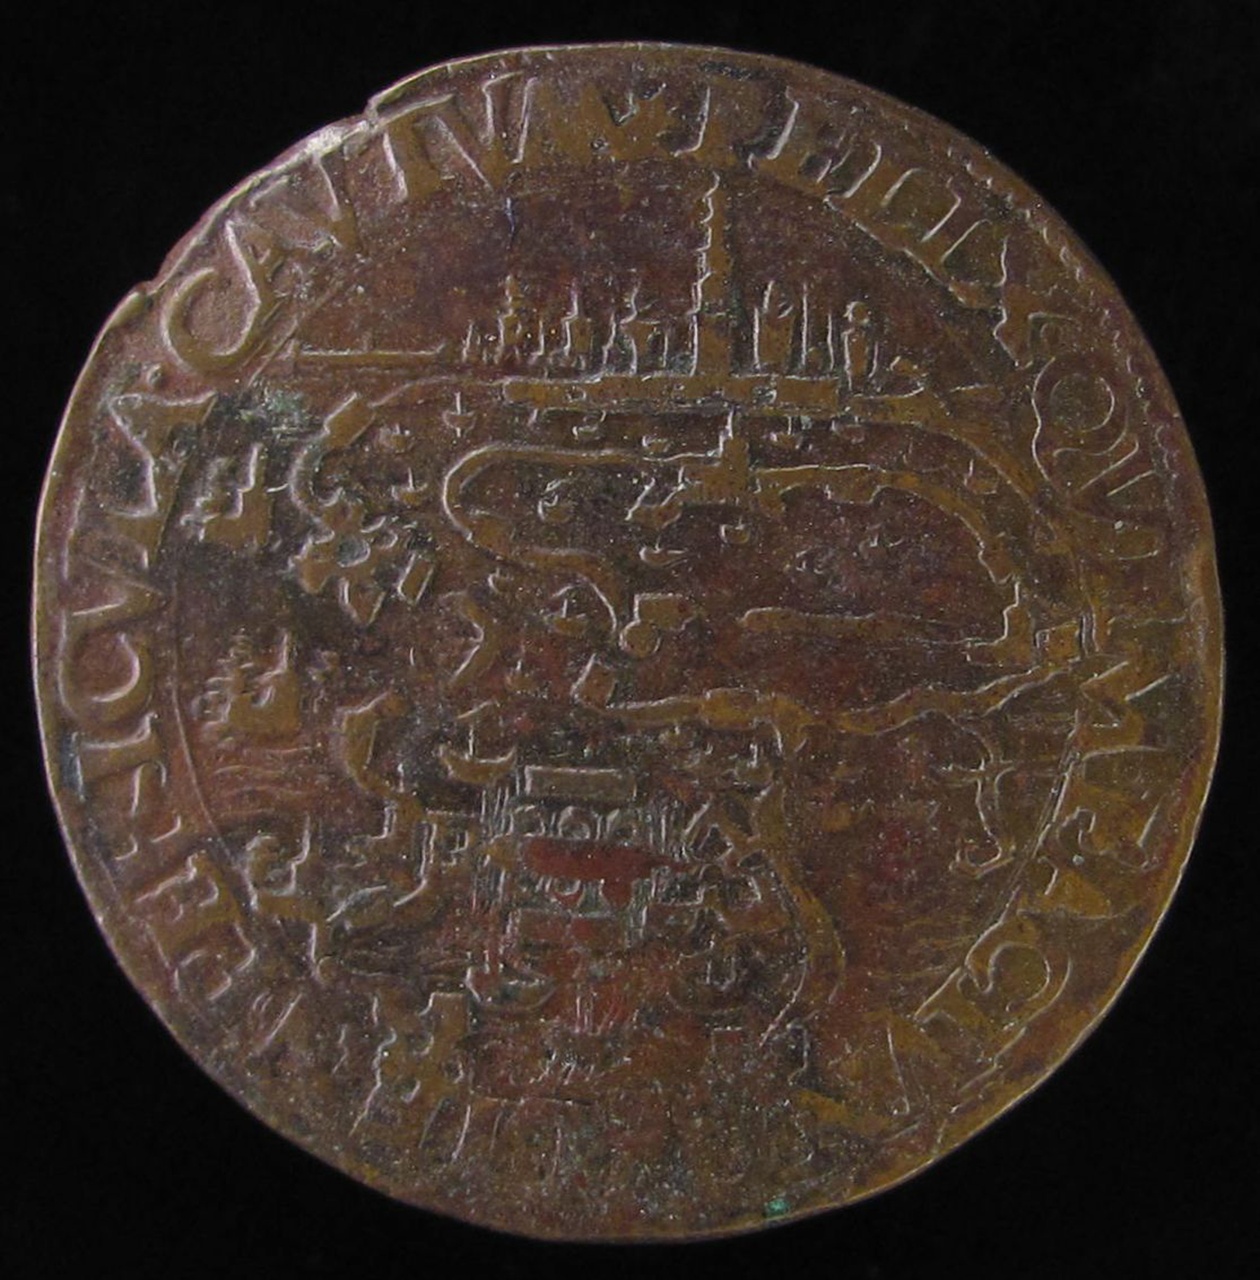 Overgave van Antwerpen aan de hertog van Parma, 1585